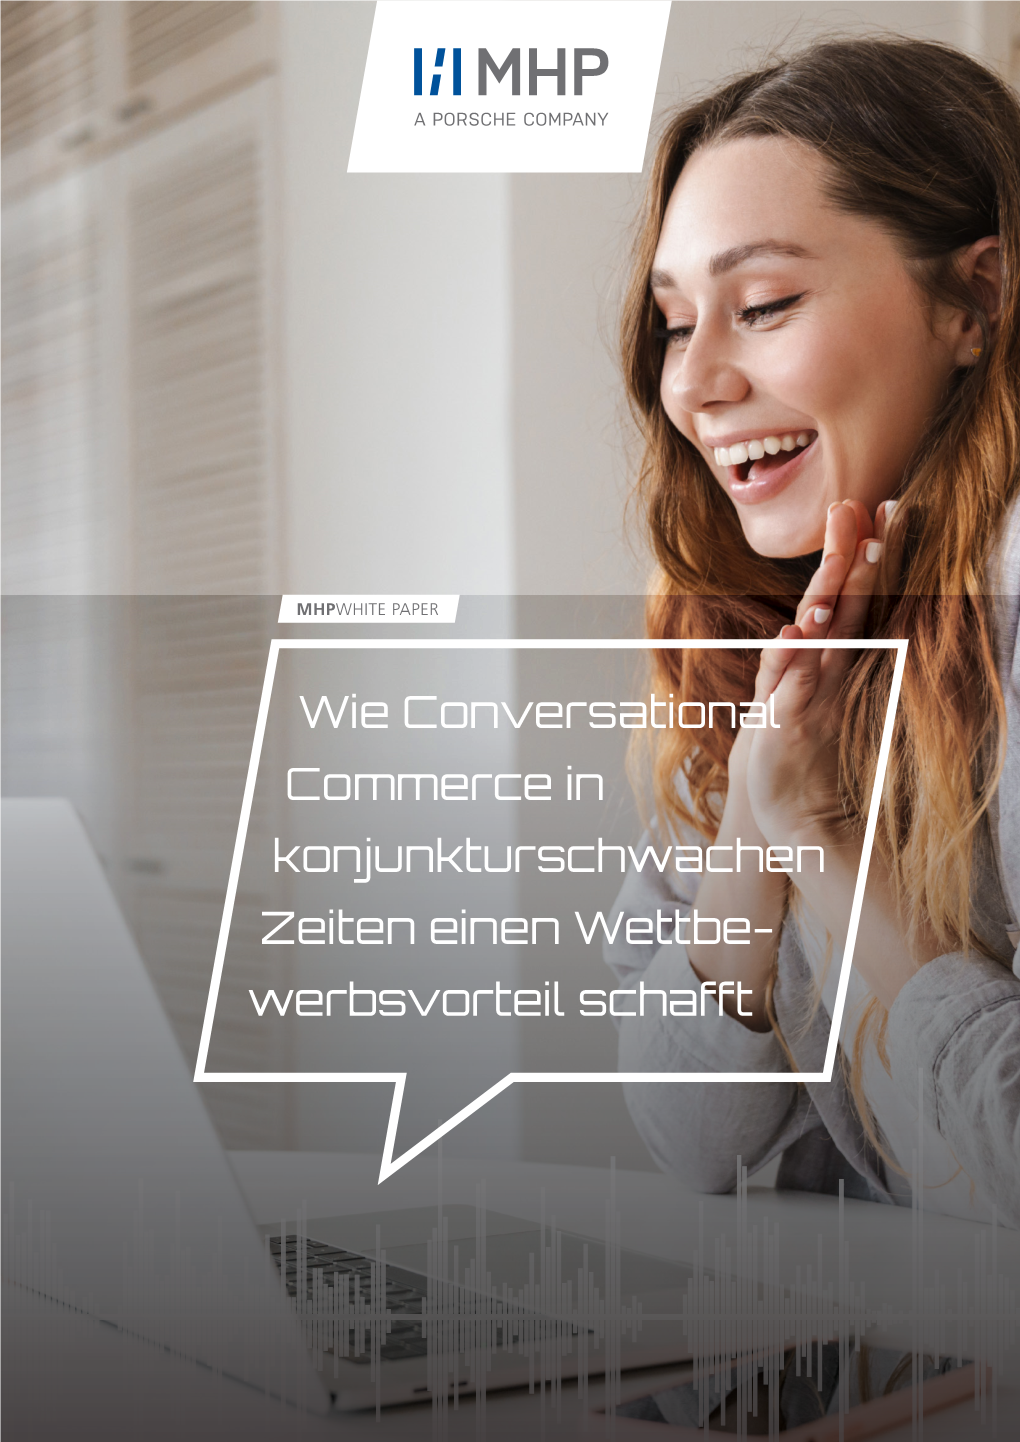 Conversational Commerce in Konjunkturschwachen Zeiten Einen Wettbe- Werbsvorteil Schafft Conversational Commerce | Januar 2021